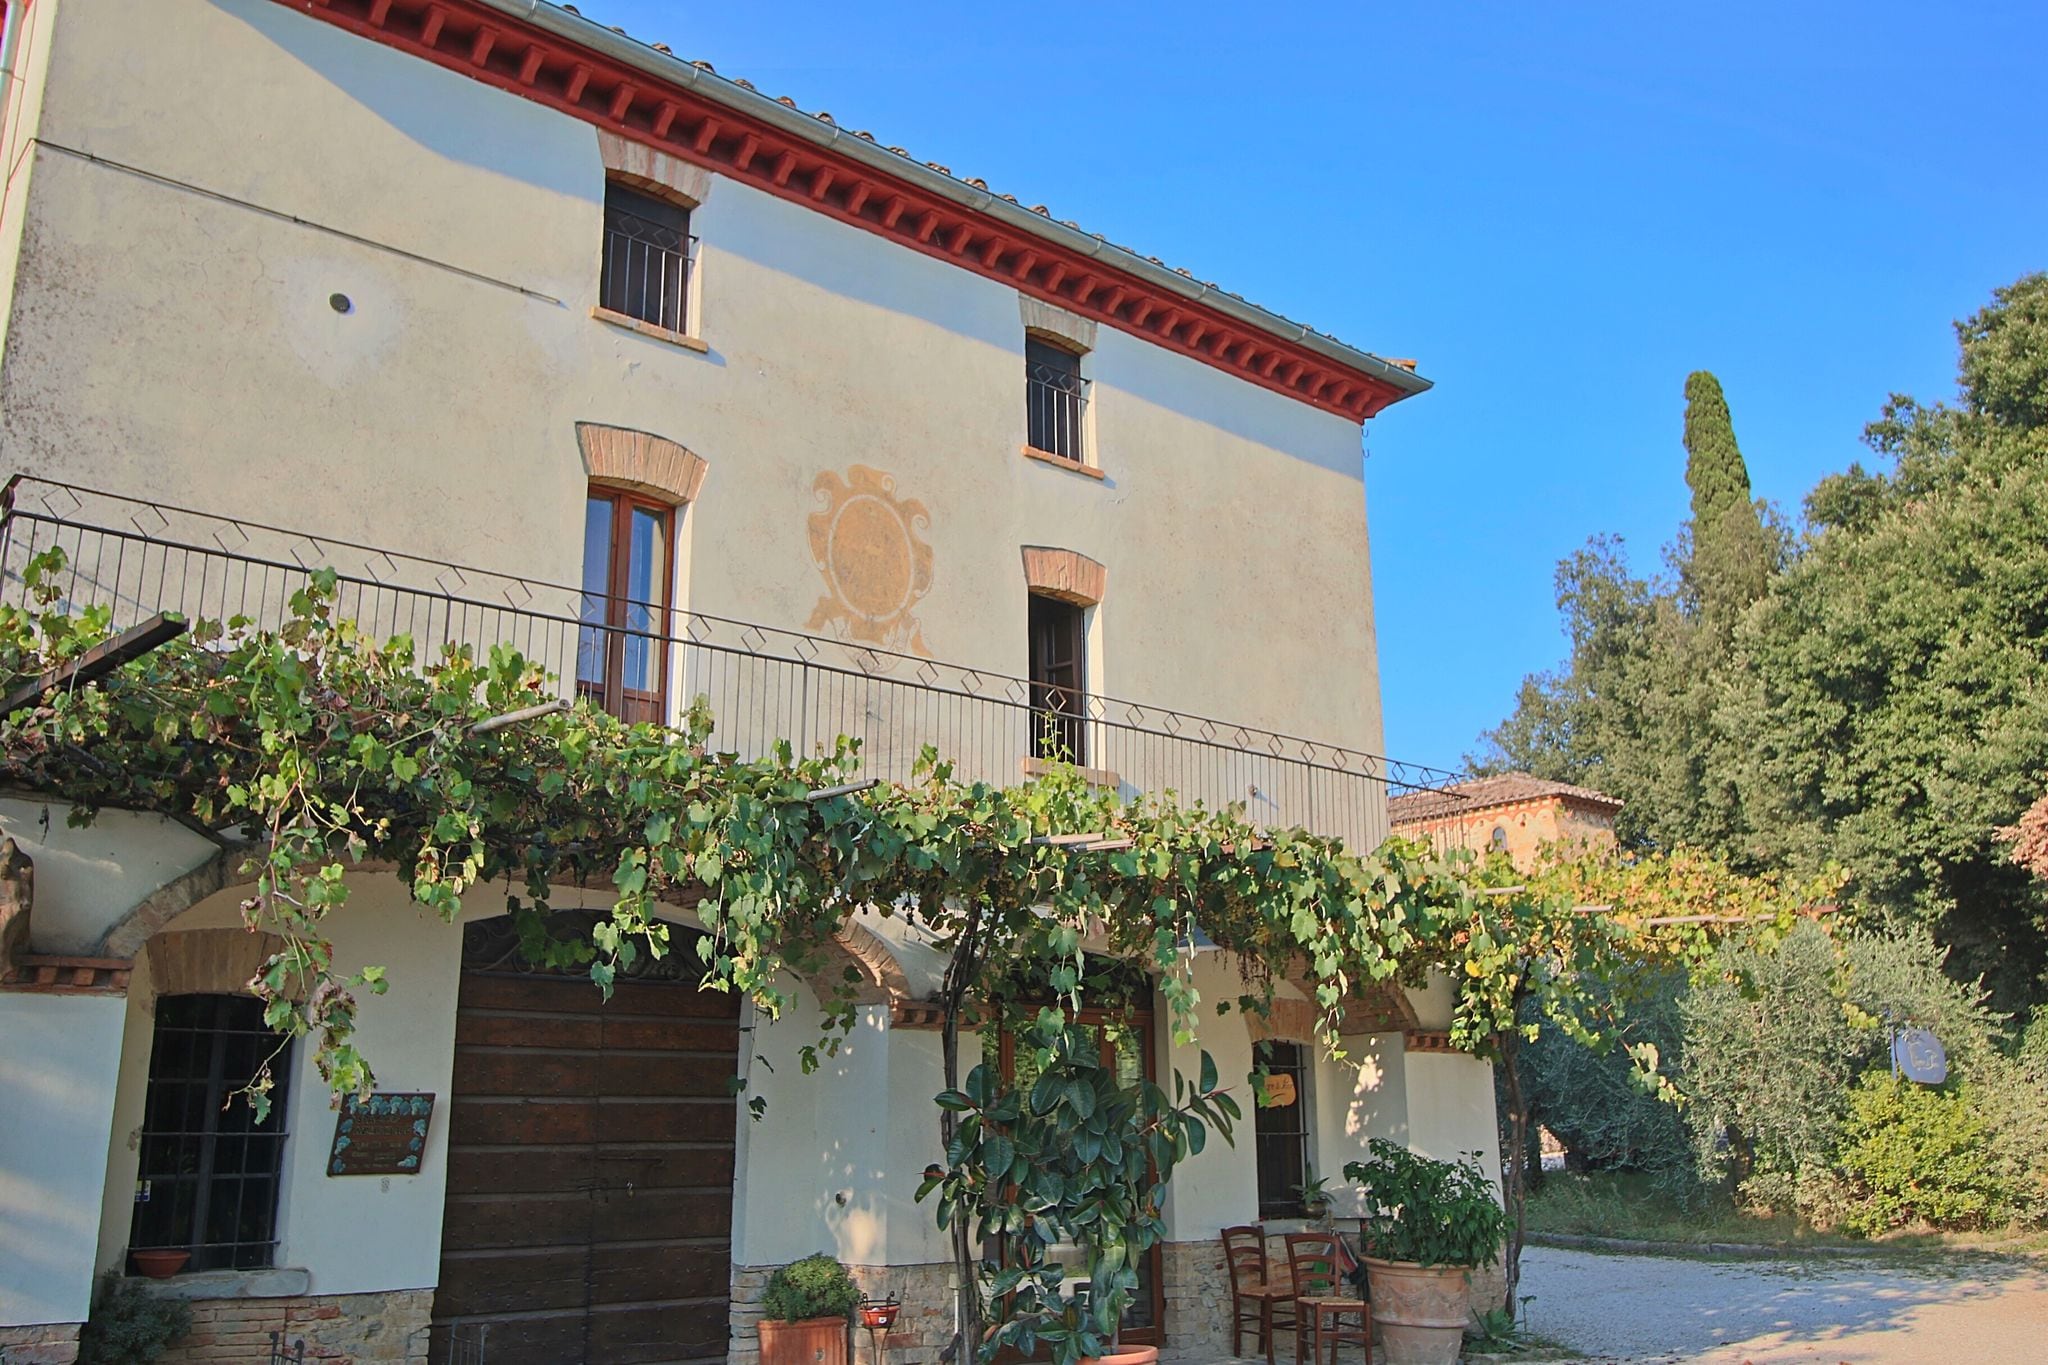 Ruim appartement in een oude boerenhoeve, gelegen op een wijnlandgoed in Umbrië